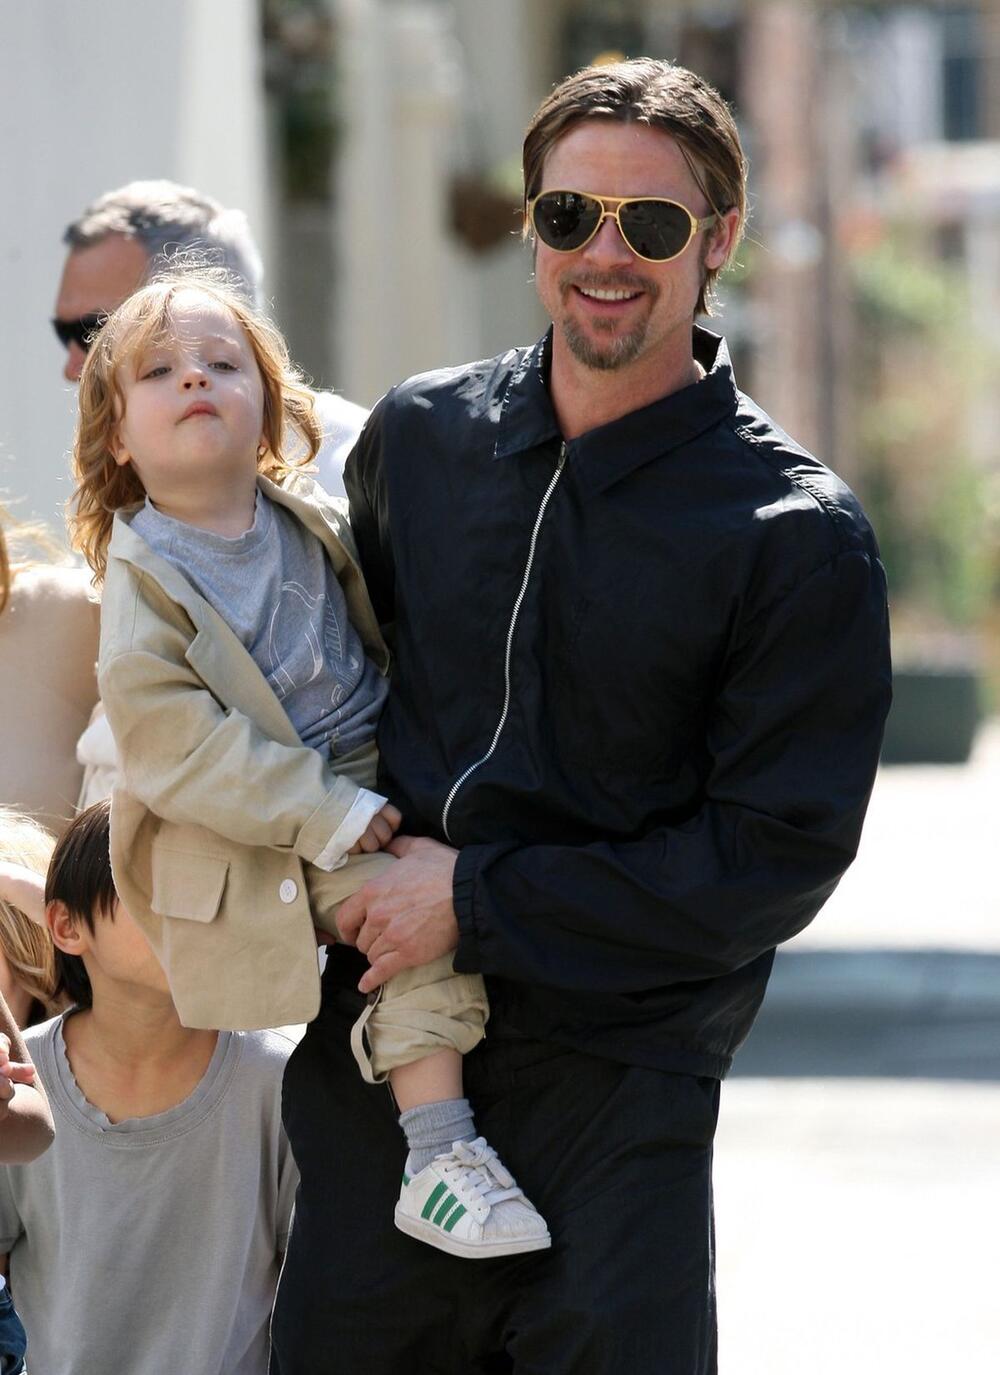 Bred Pit sa ćerkom Vivijen Džoli-Pit 2011. godine